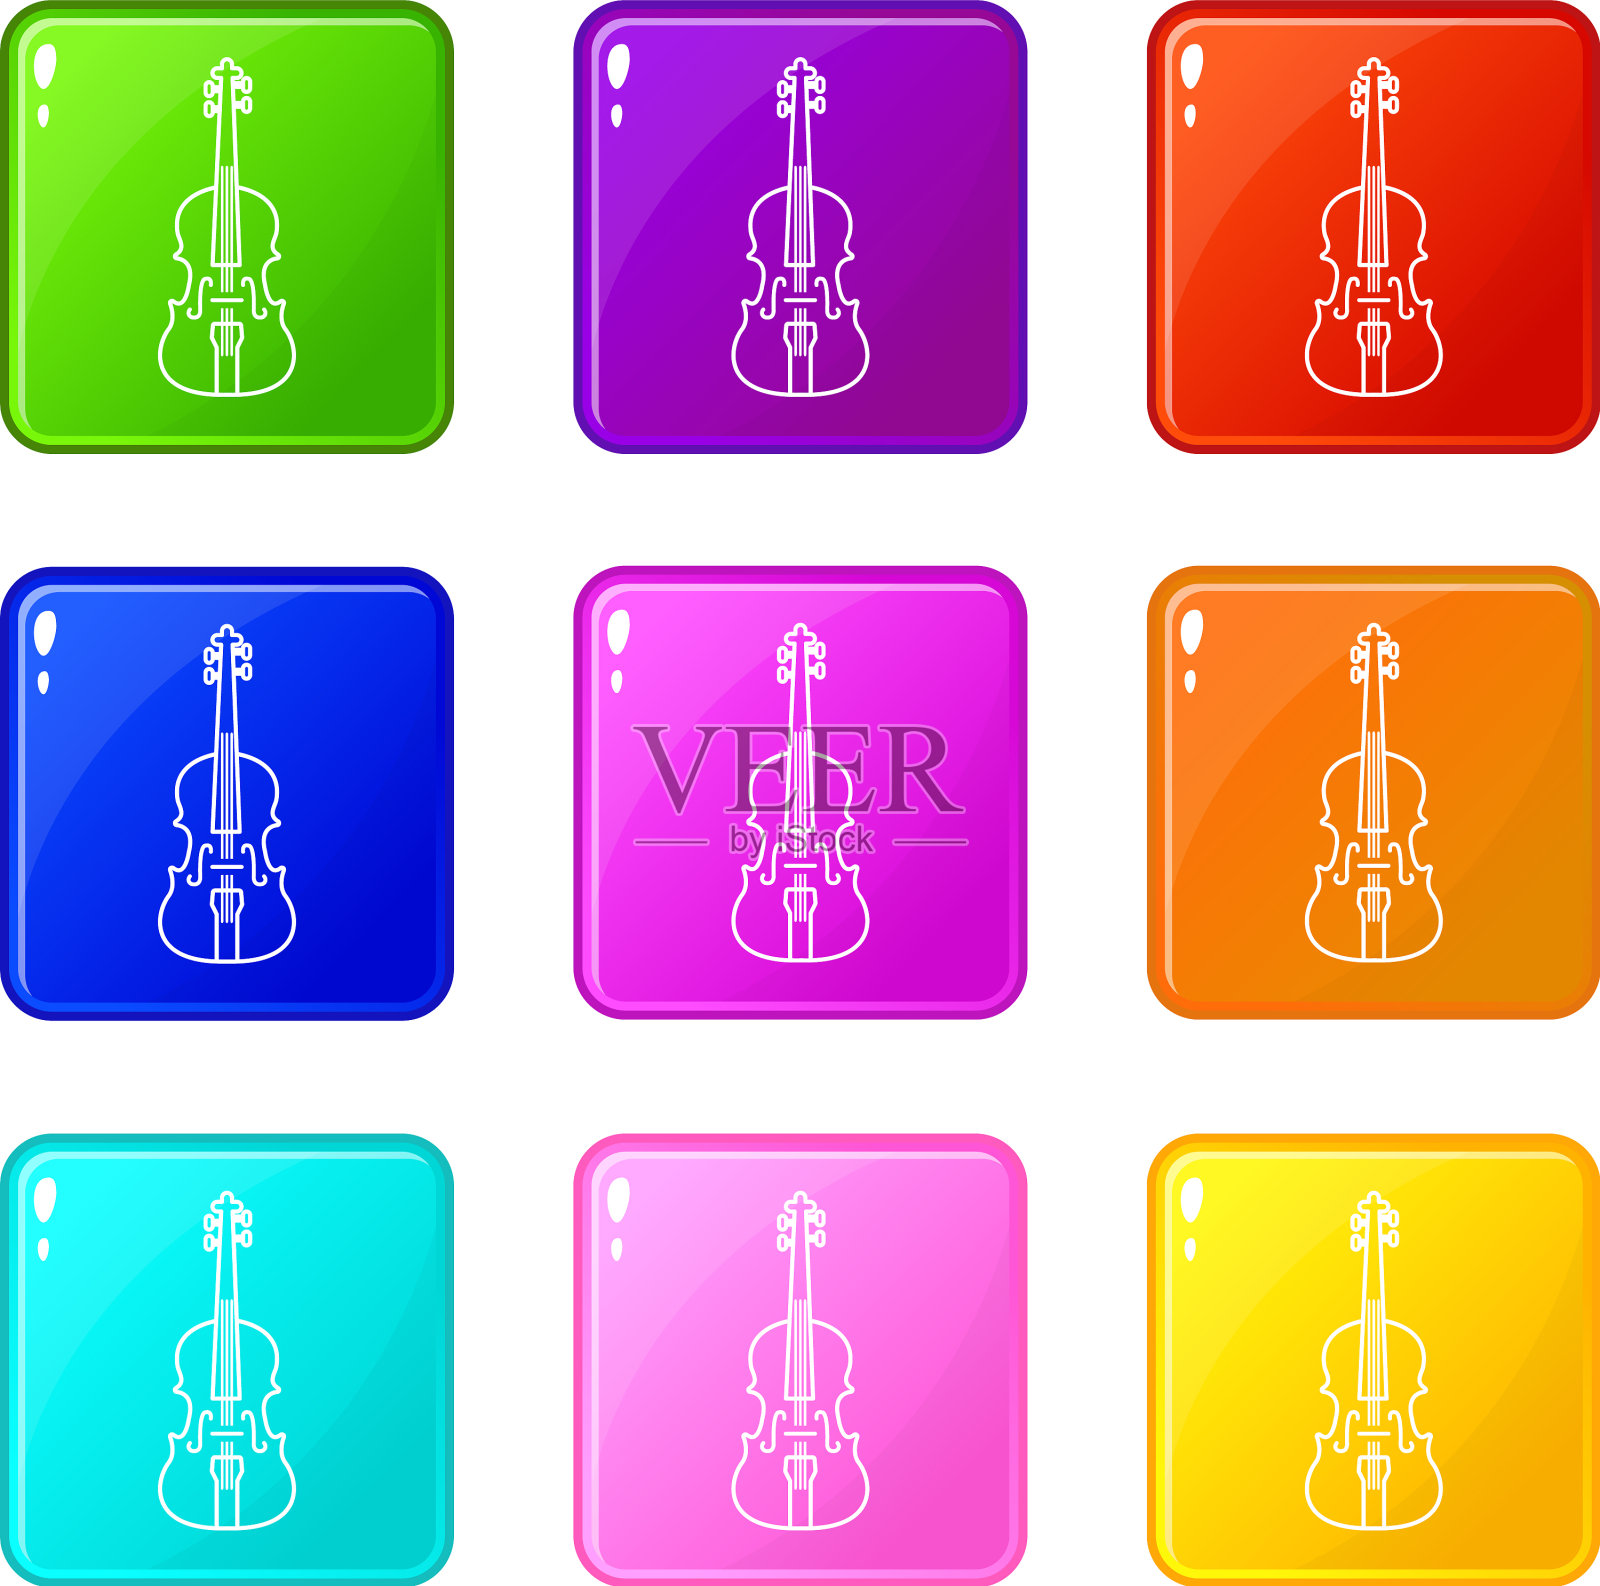 小提琴图标集9种颜色的集合图标素材